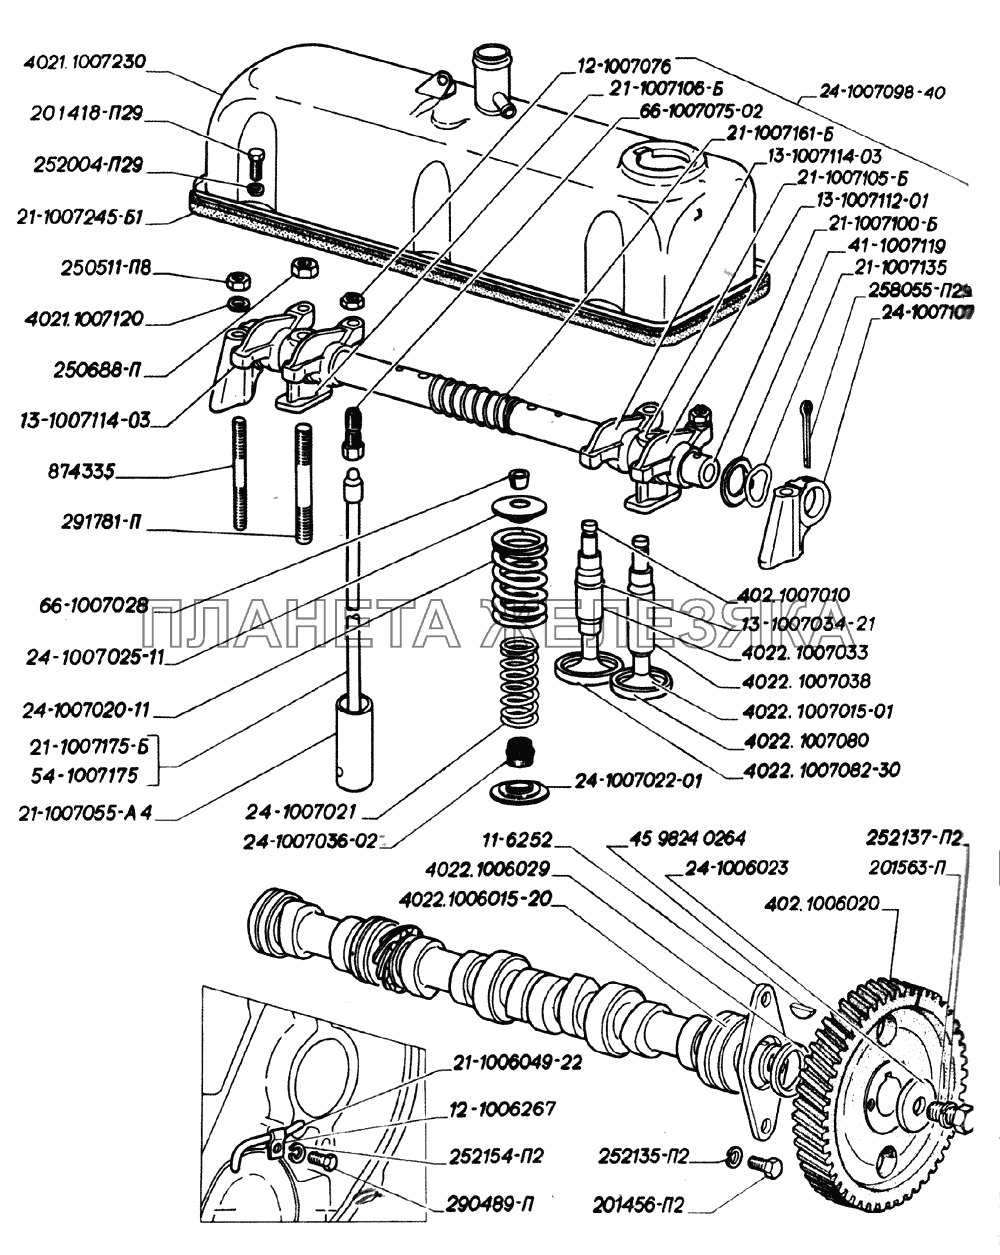 Вал распределительный, ось коромысел, клапаны и толкатели клапанов, крышка коромысел двигателей ЗМЗ-402 ГАЗ-2705 (дв. ЗМЗ-406)